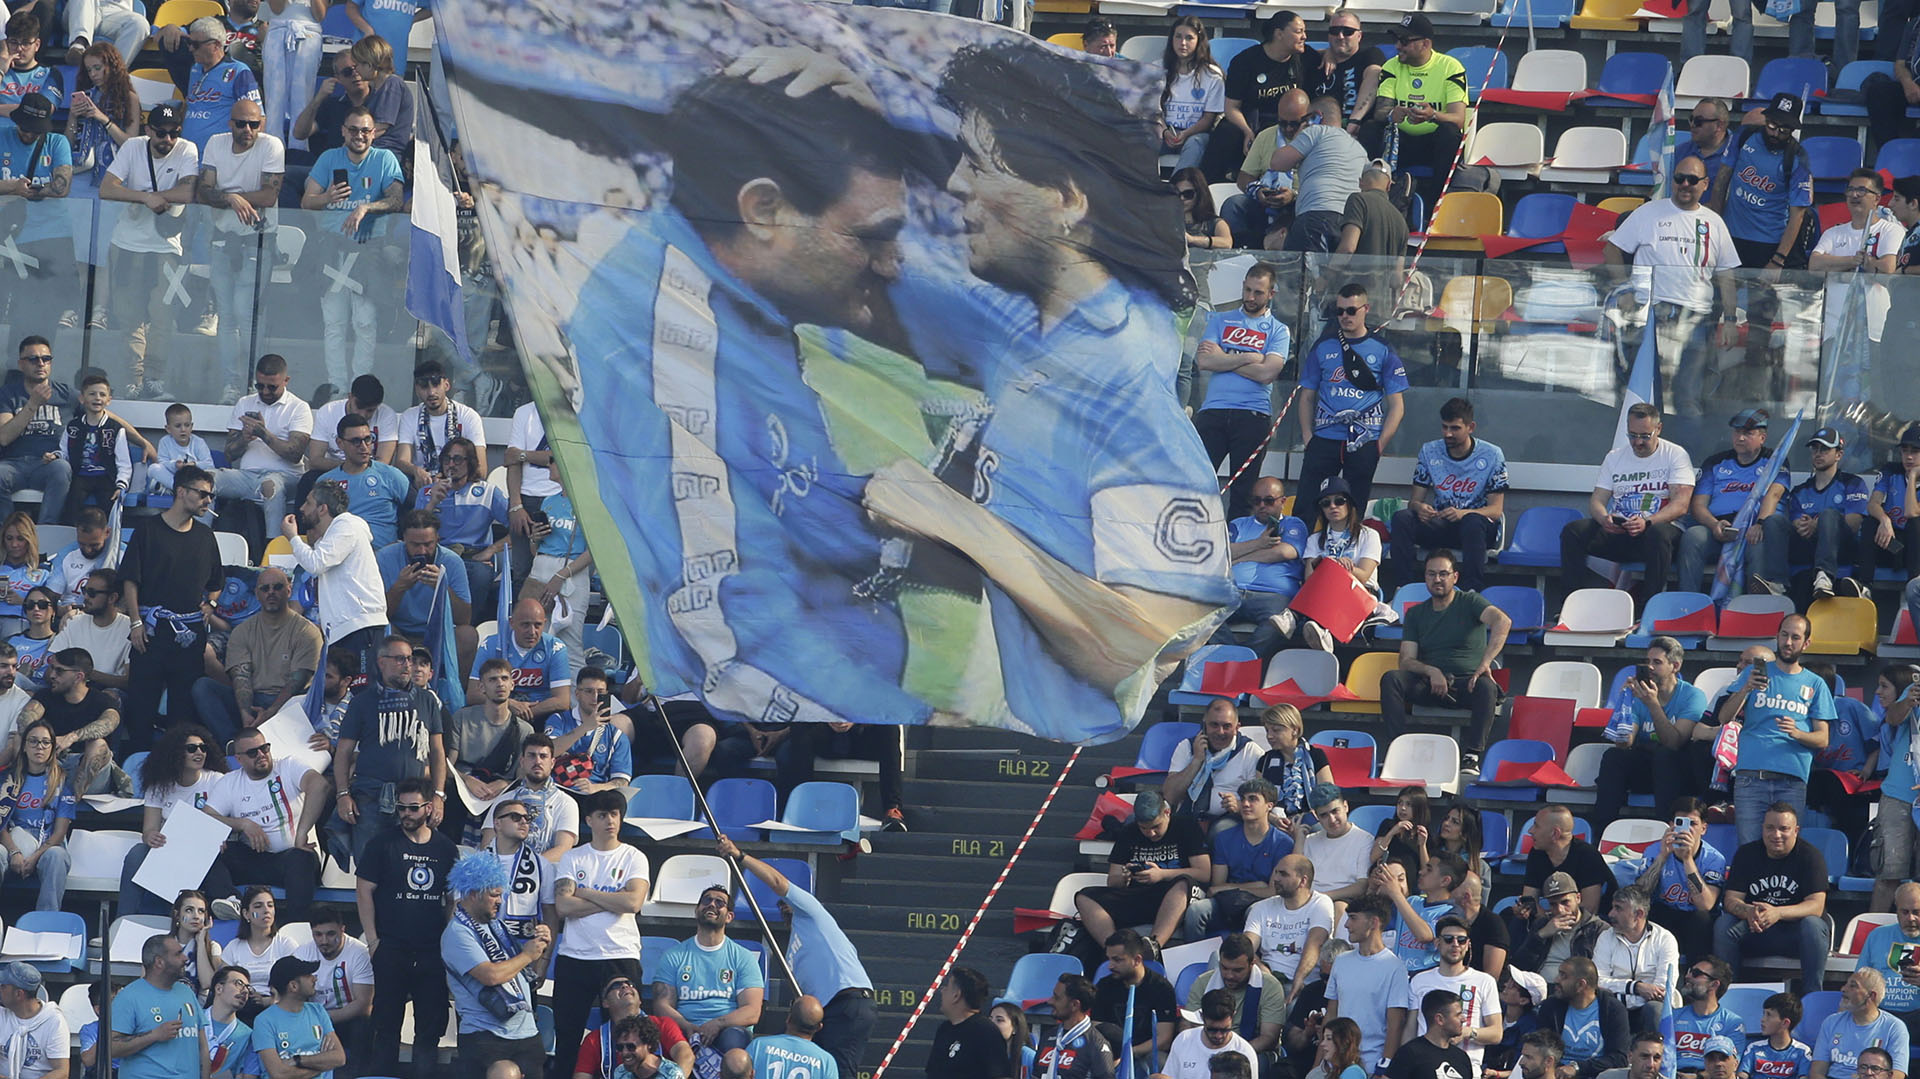 Las perlitas de la fiesta del Napoli campeón: la “presencia” de Maradona y el excéntrico look del Cholito Simeone ante los ojos de su papá